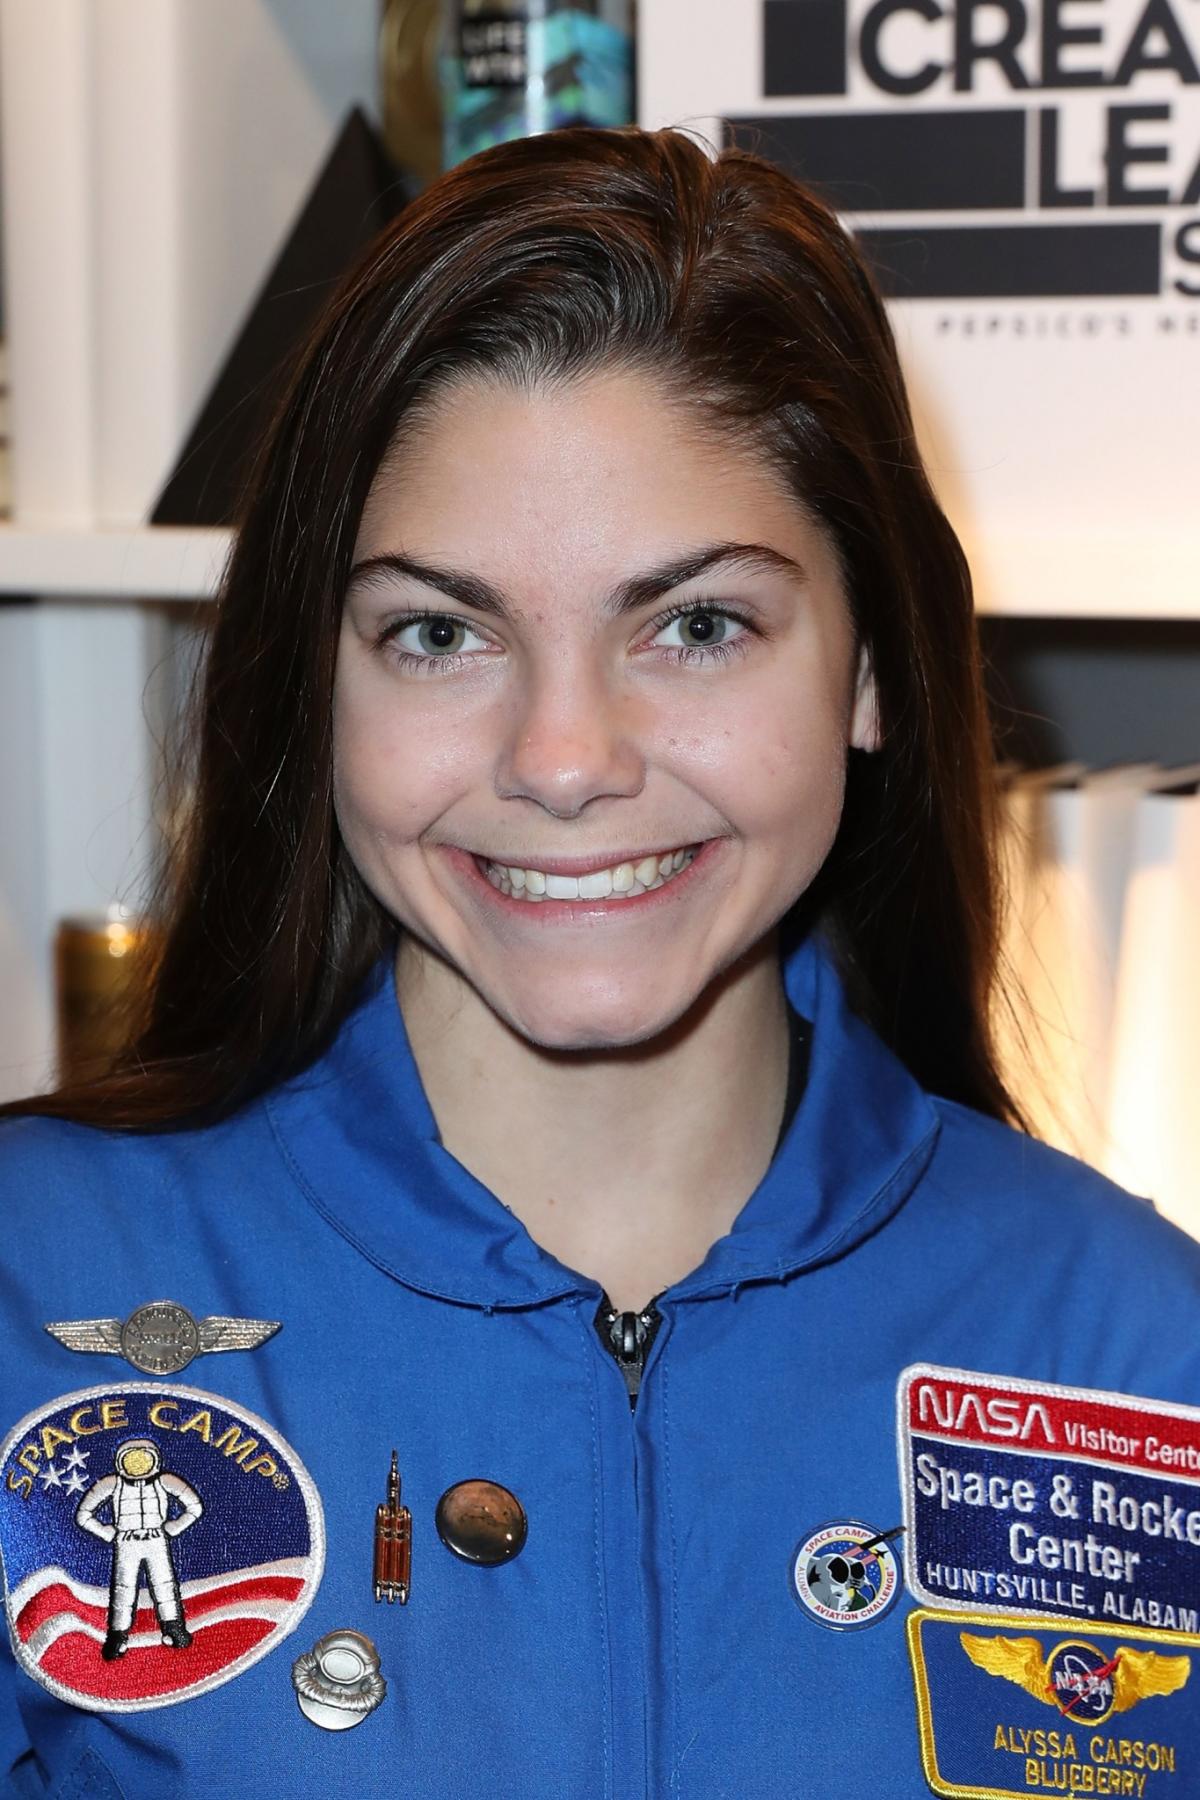 Alyssa Carson, la adolescente que entrena para viajar a Marte en 2030